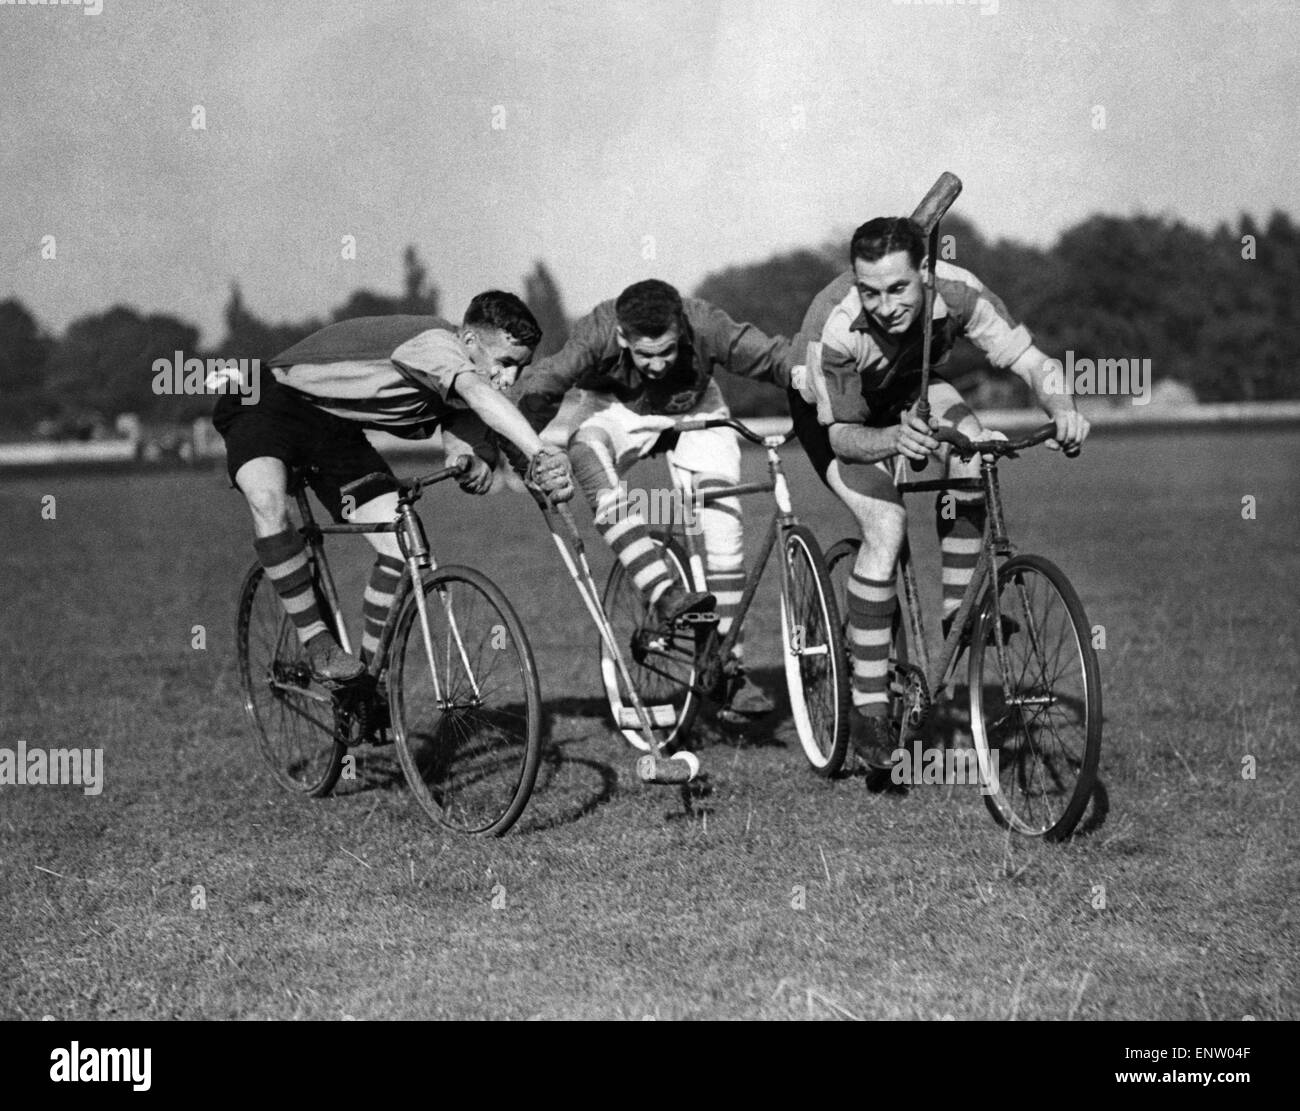 Trois boursiers Cycle polo jeu qui a été inventé dans le comté de Wicklow, Irlande, en 1891 par l'ancien coureur cycliste, Richard J. Mecredy. Le sport est similaire à celle des polo, sauf que les vélos sont utilisés au lieu de chevaux. 13 Juin 1937 Banque D'Images